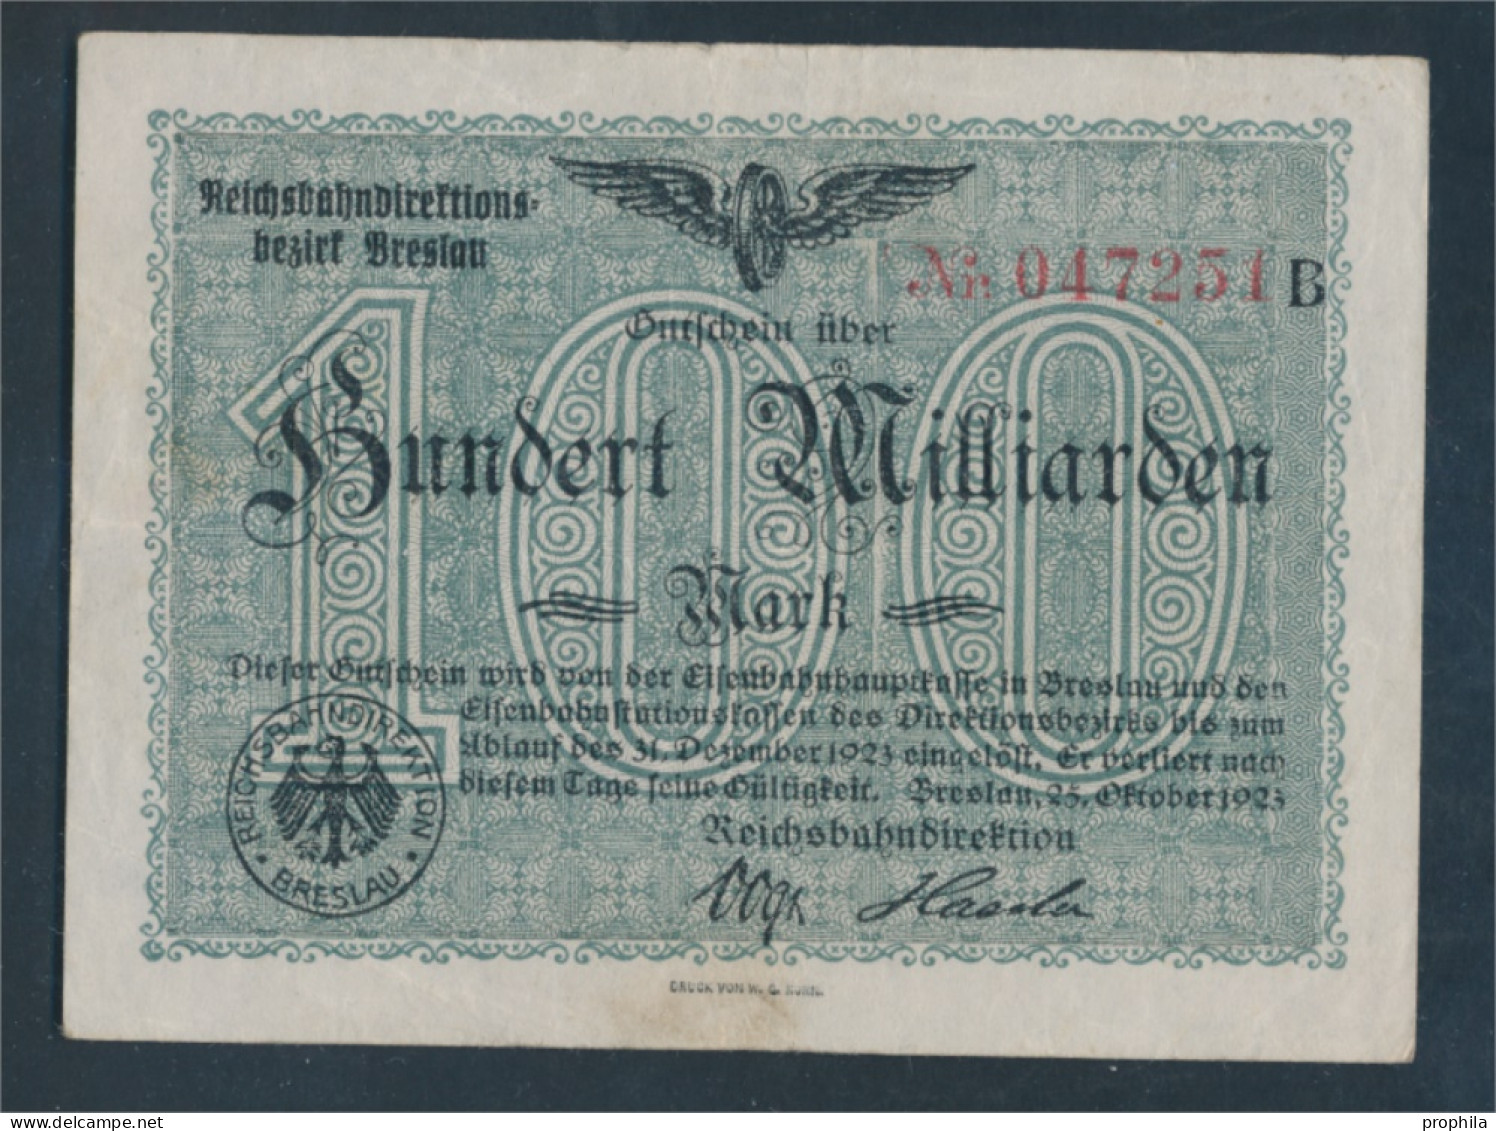 Breslau Pick-Nr: S1140 Inflationsgeld Der Deutschen Reichsbahn Breslau Gebraucht (III) 1923 100 Milliarden Mar (10288421 - 100 Miljard Mark